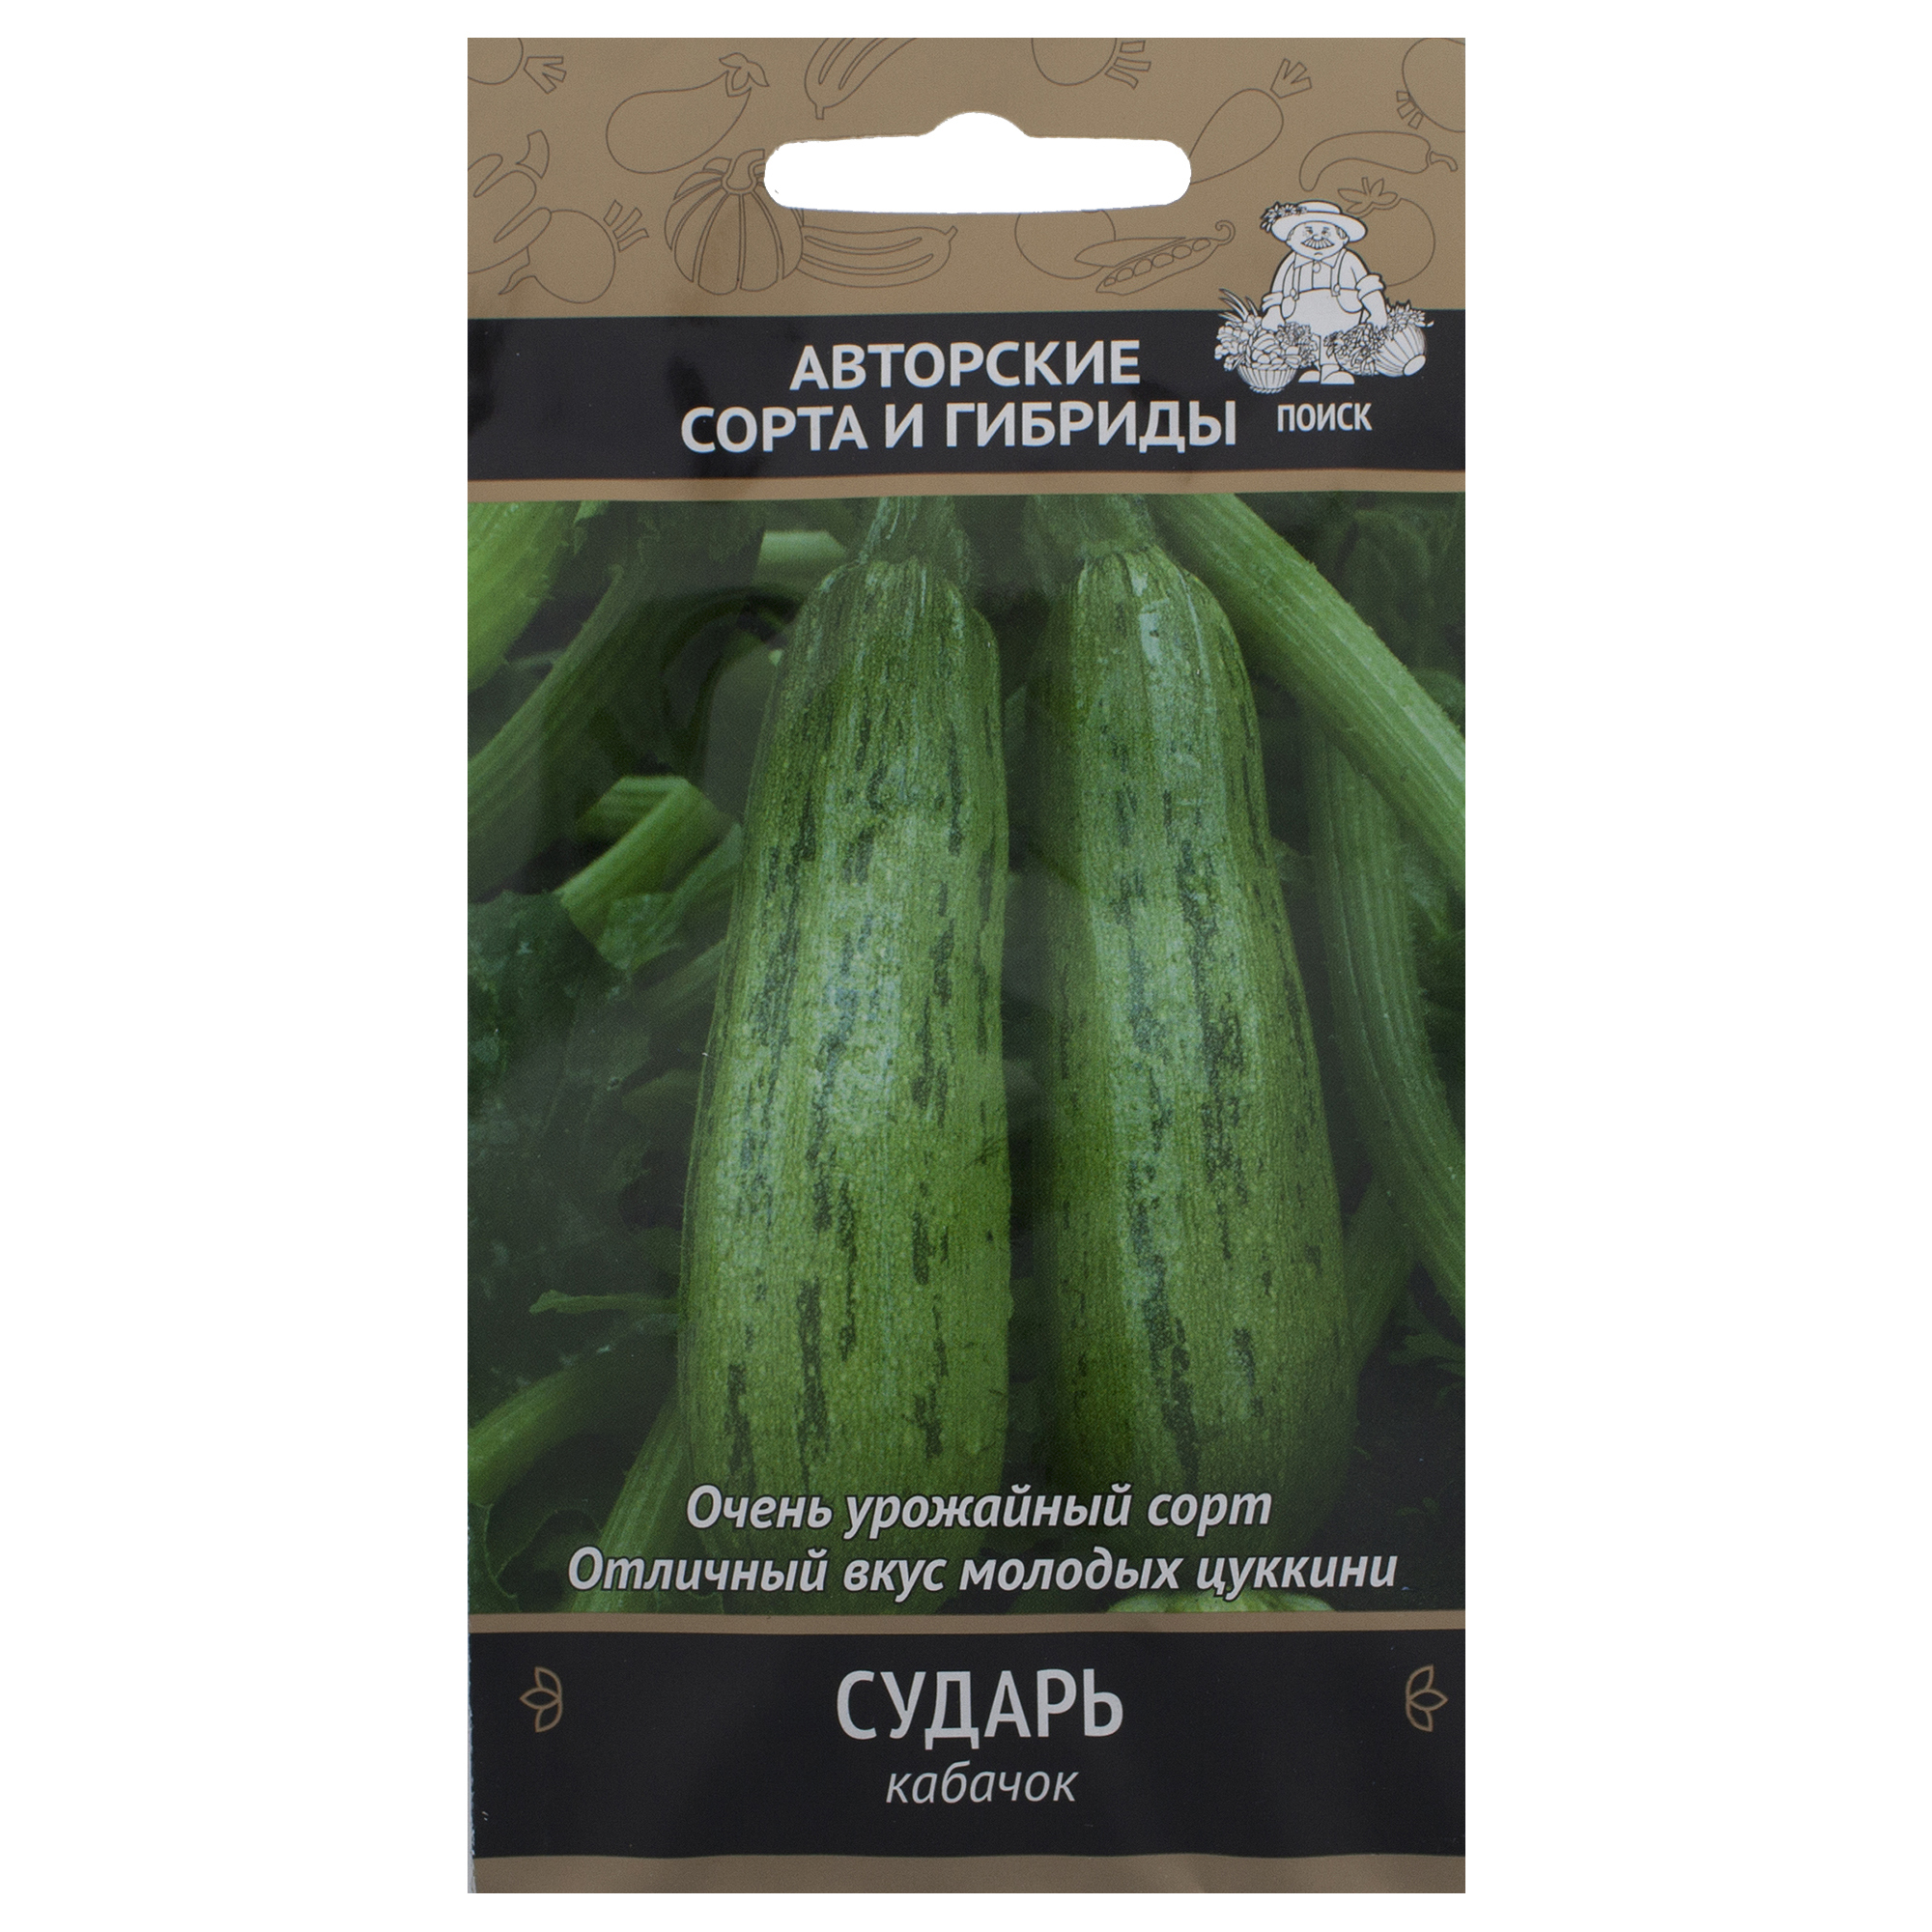 Семена Кабачок «Сударь» - купить в в Санкт-Петербурге по низкой цене